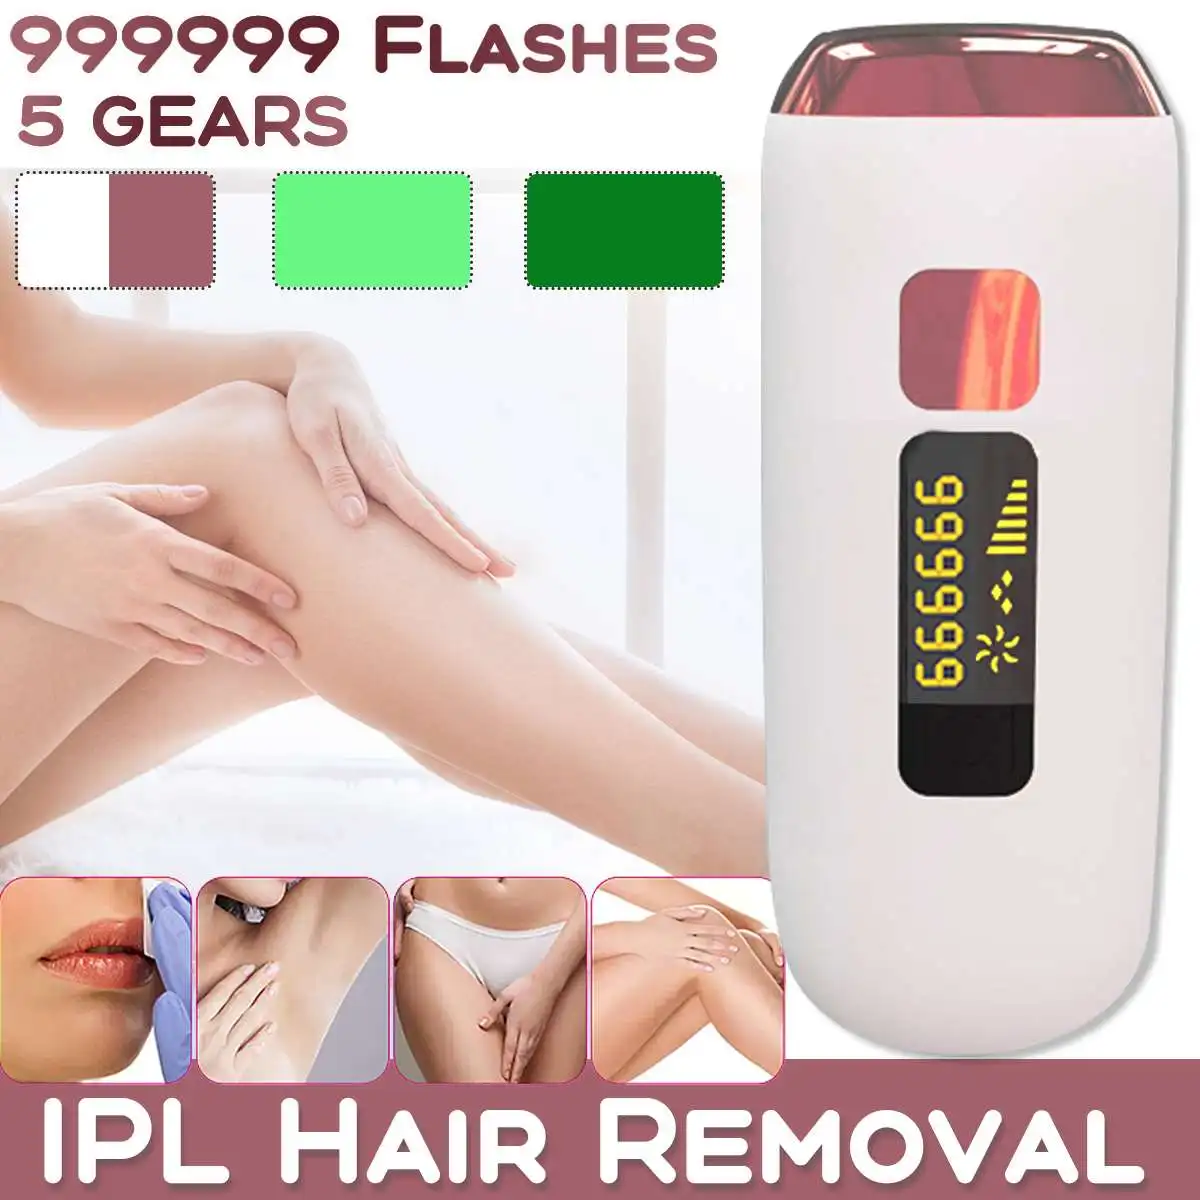 

Лазерный эпилятор для удаления волос IPL для женщин, 999999 вспышек, Перманентный безболезненный Фотоэпилятор для всего тела, портативный лазер...